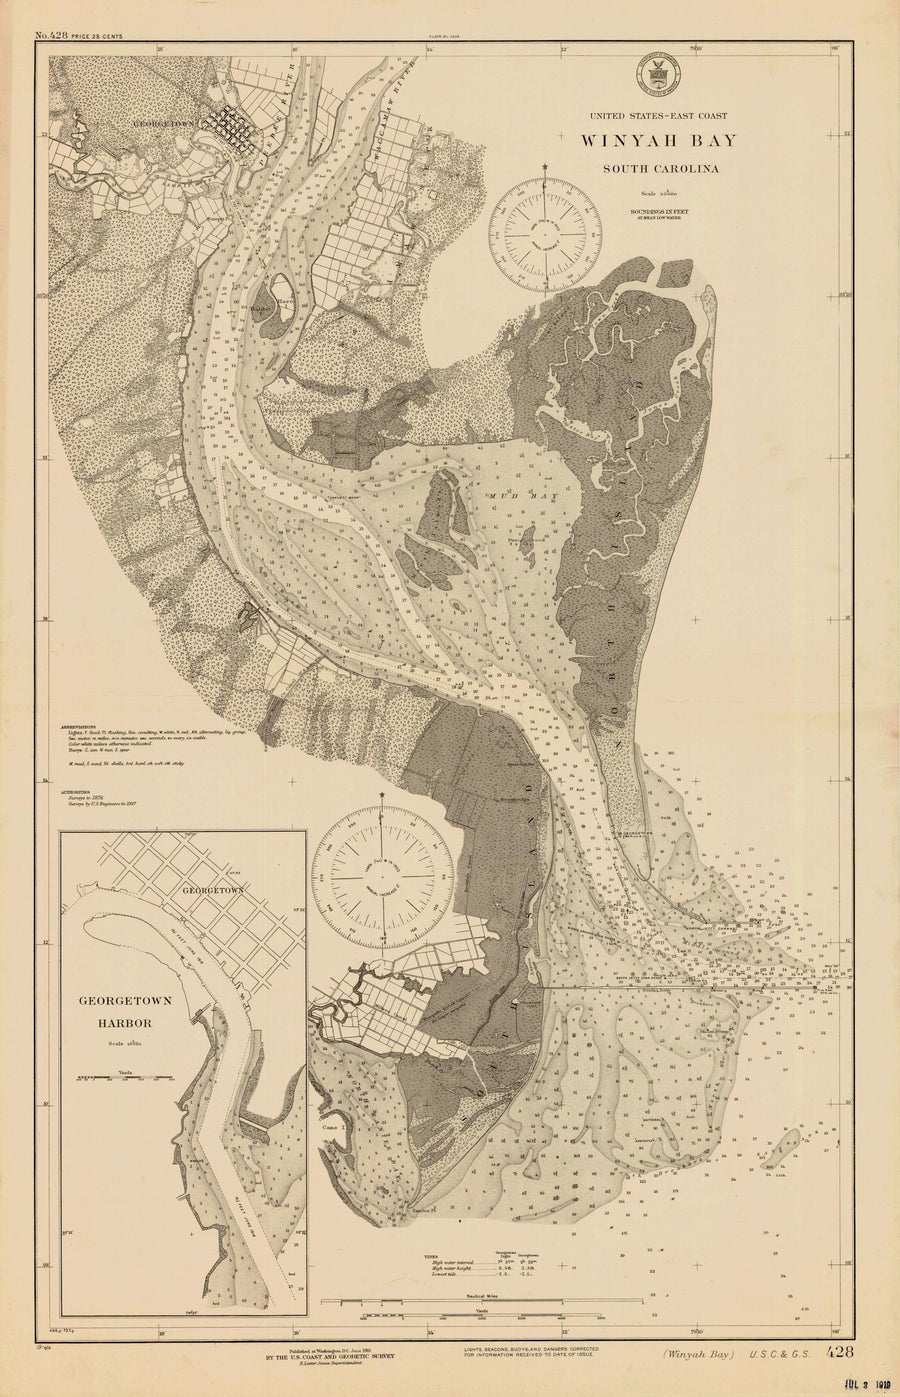 Winyah Bay Map - 1919